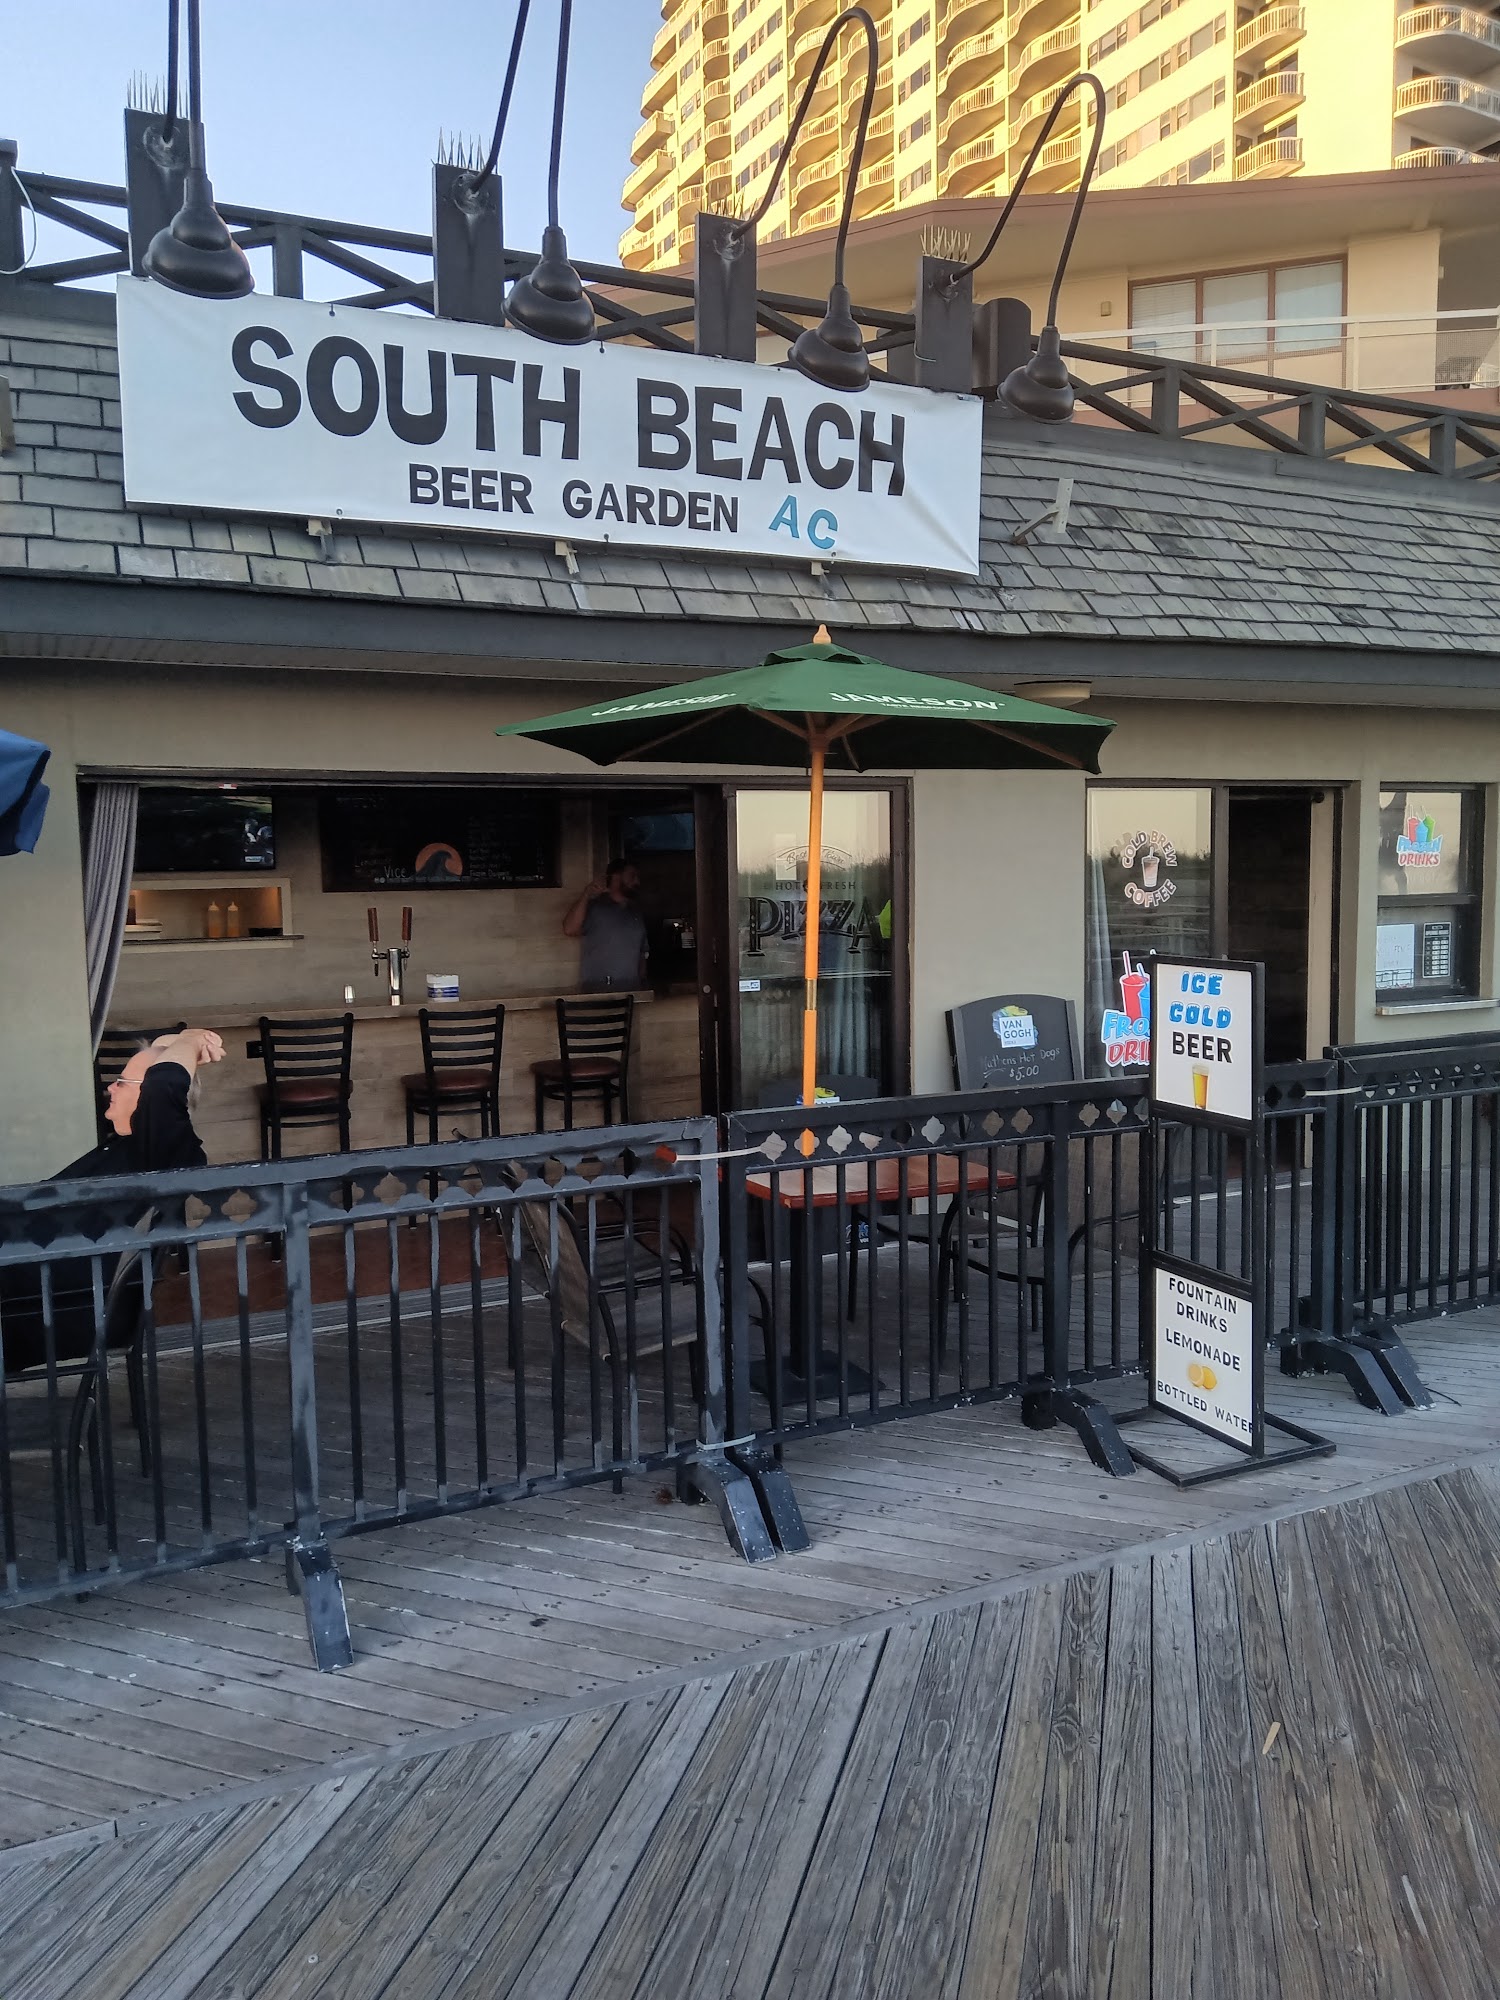 South Beach Beer Garden